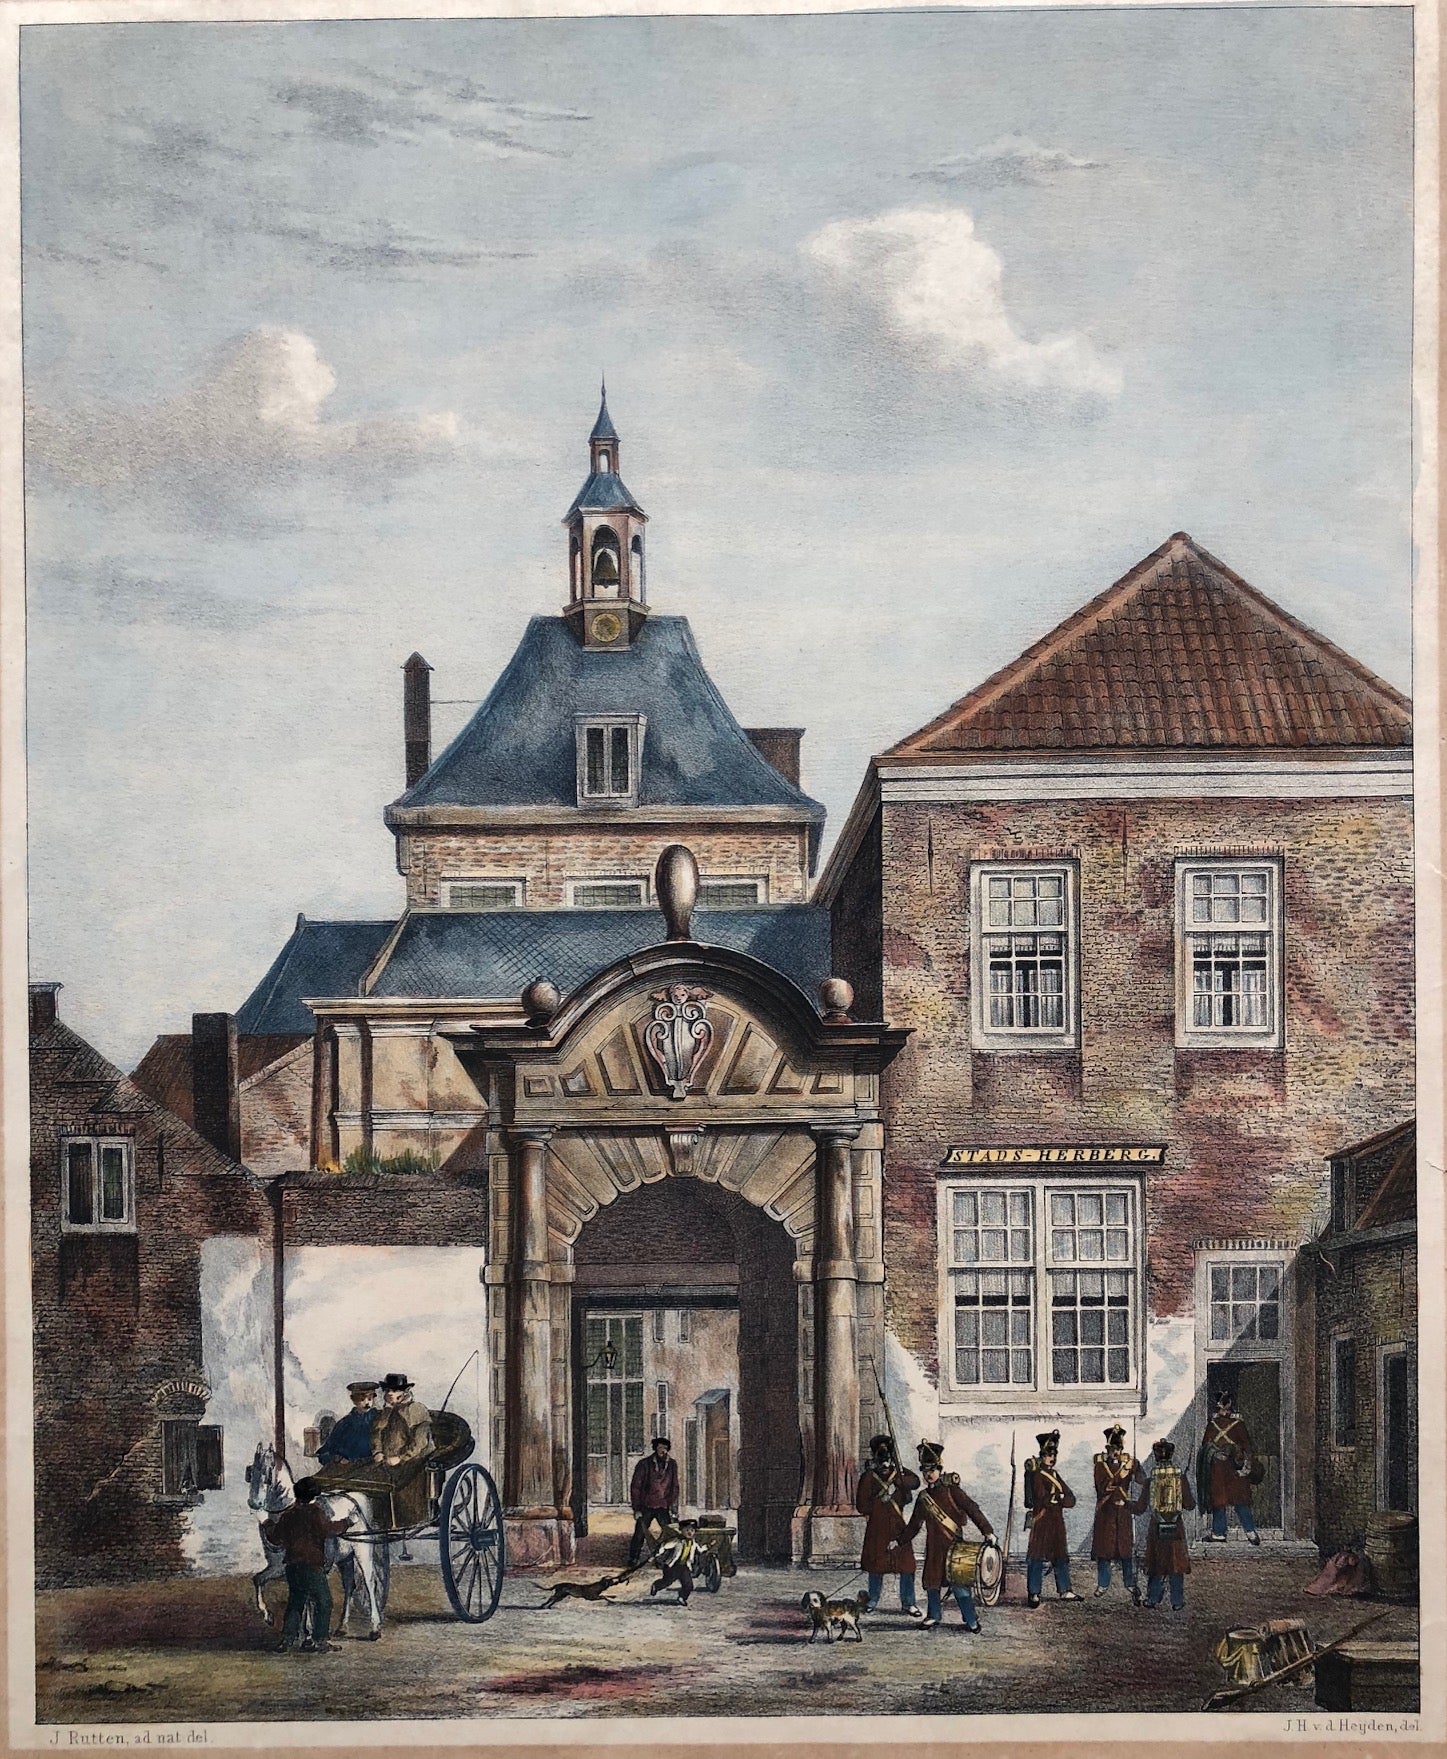 lithograph, heijden, dordrecht, city view, holland, poort, herberg, print, antique print, colour, boger, rutten